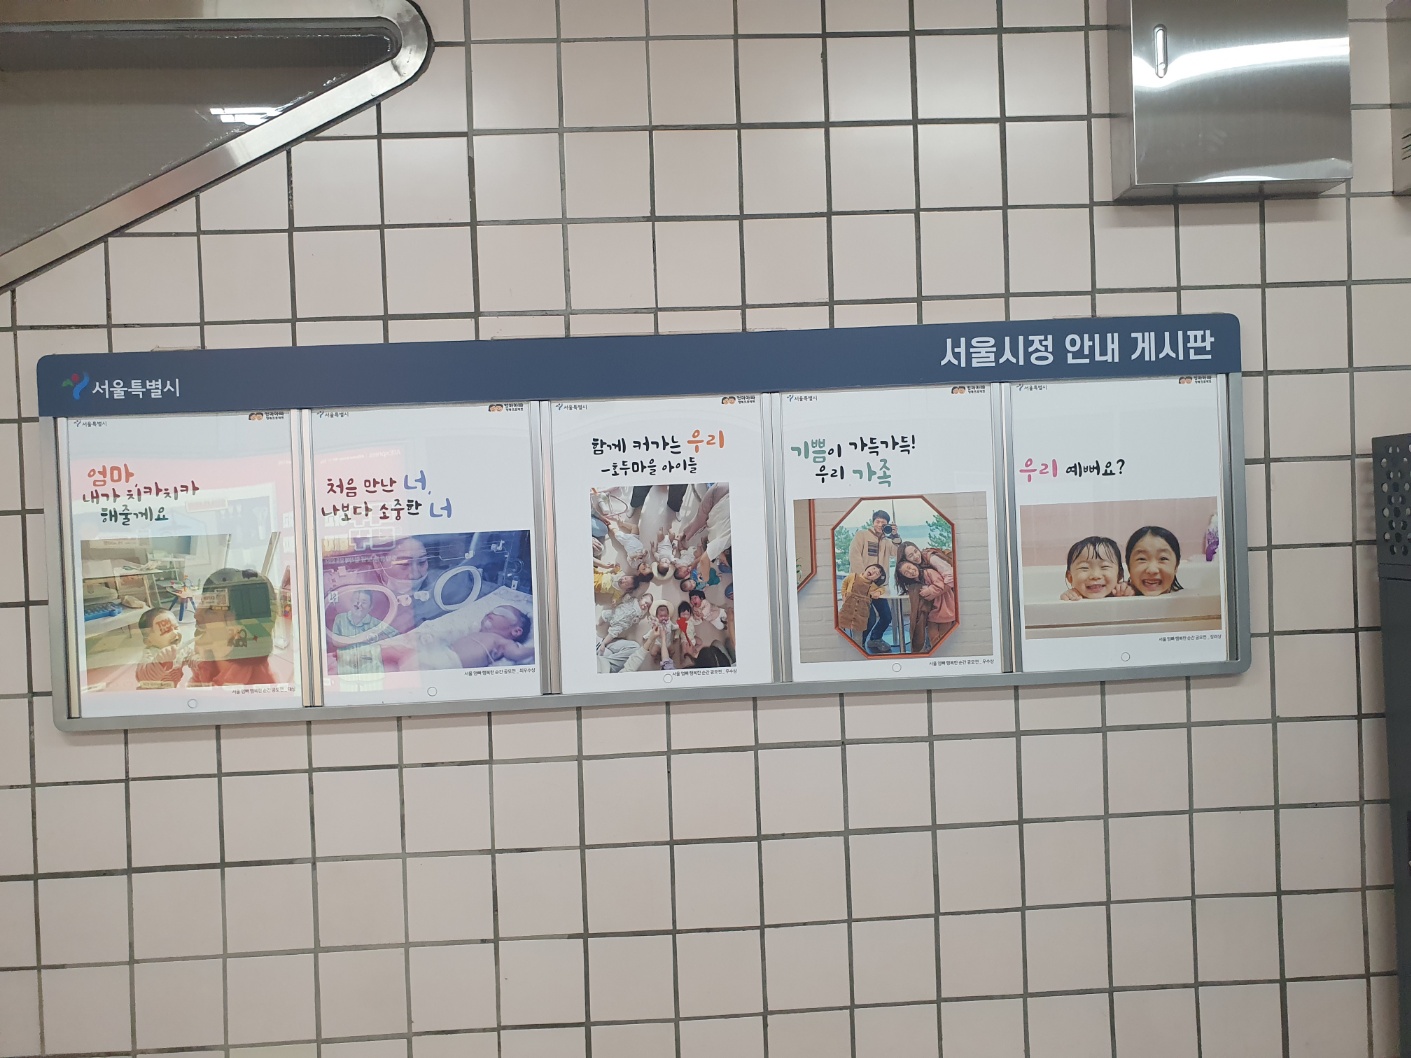 지하철 역사 게시판에 '아빠엄마 행복프로젝트' 입상작 인쇄물이 걸려있다.jpg